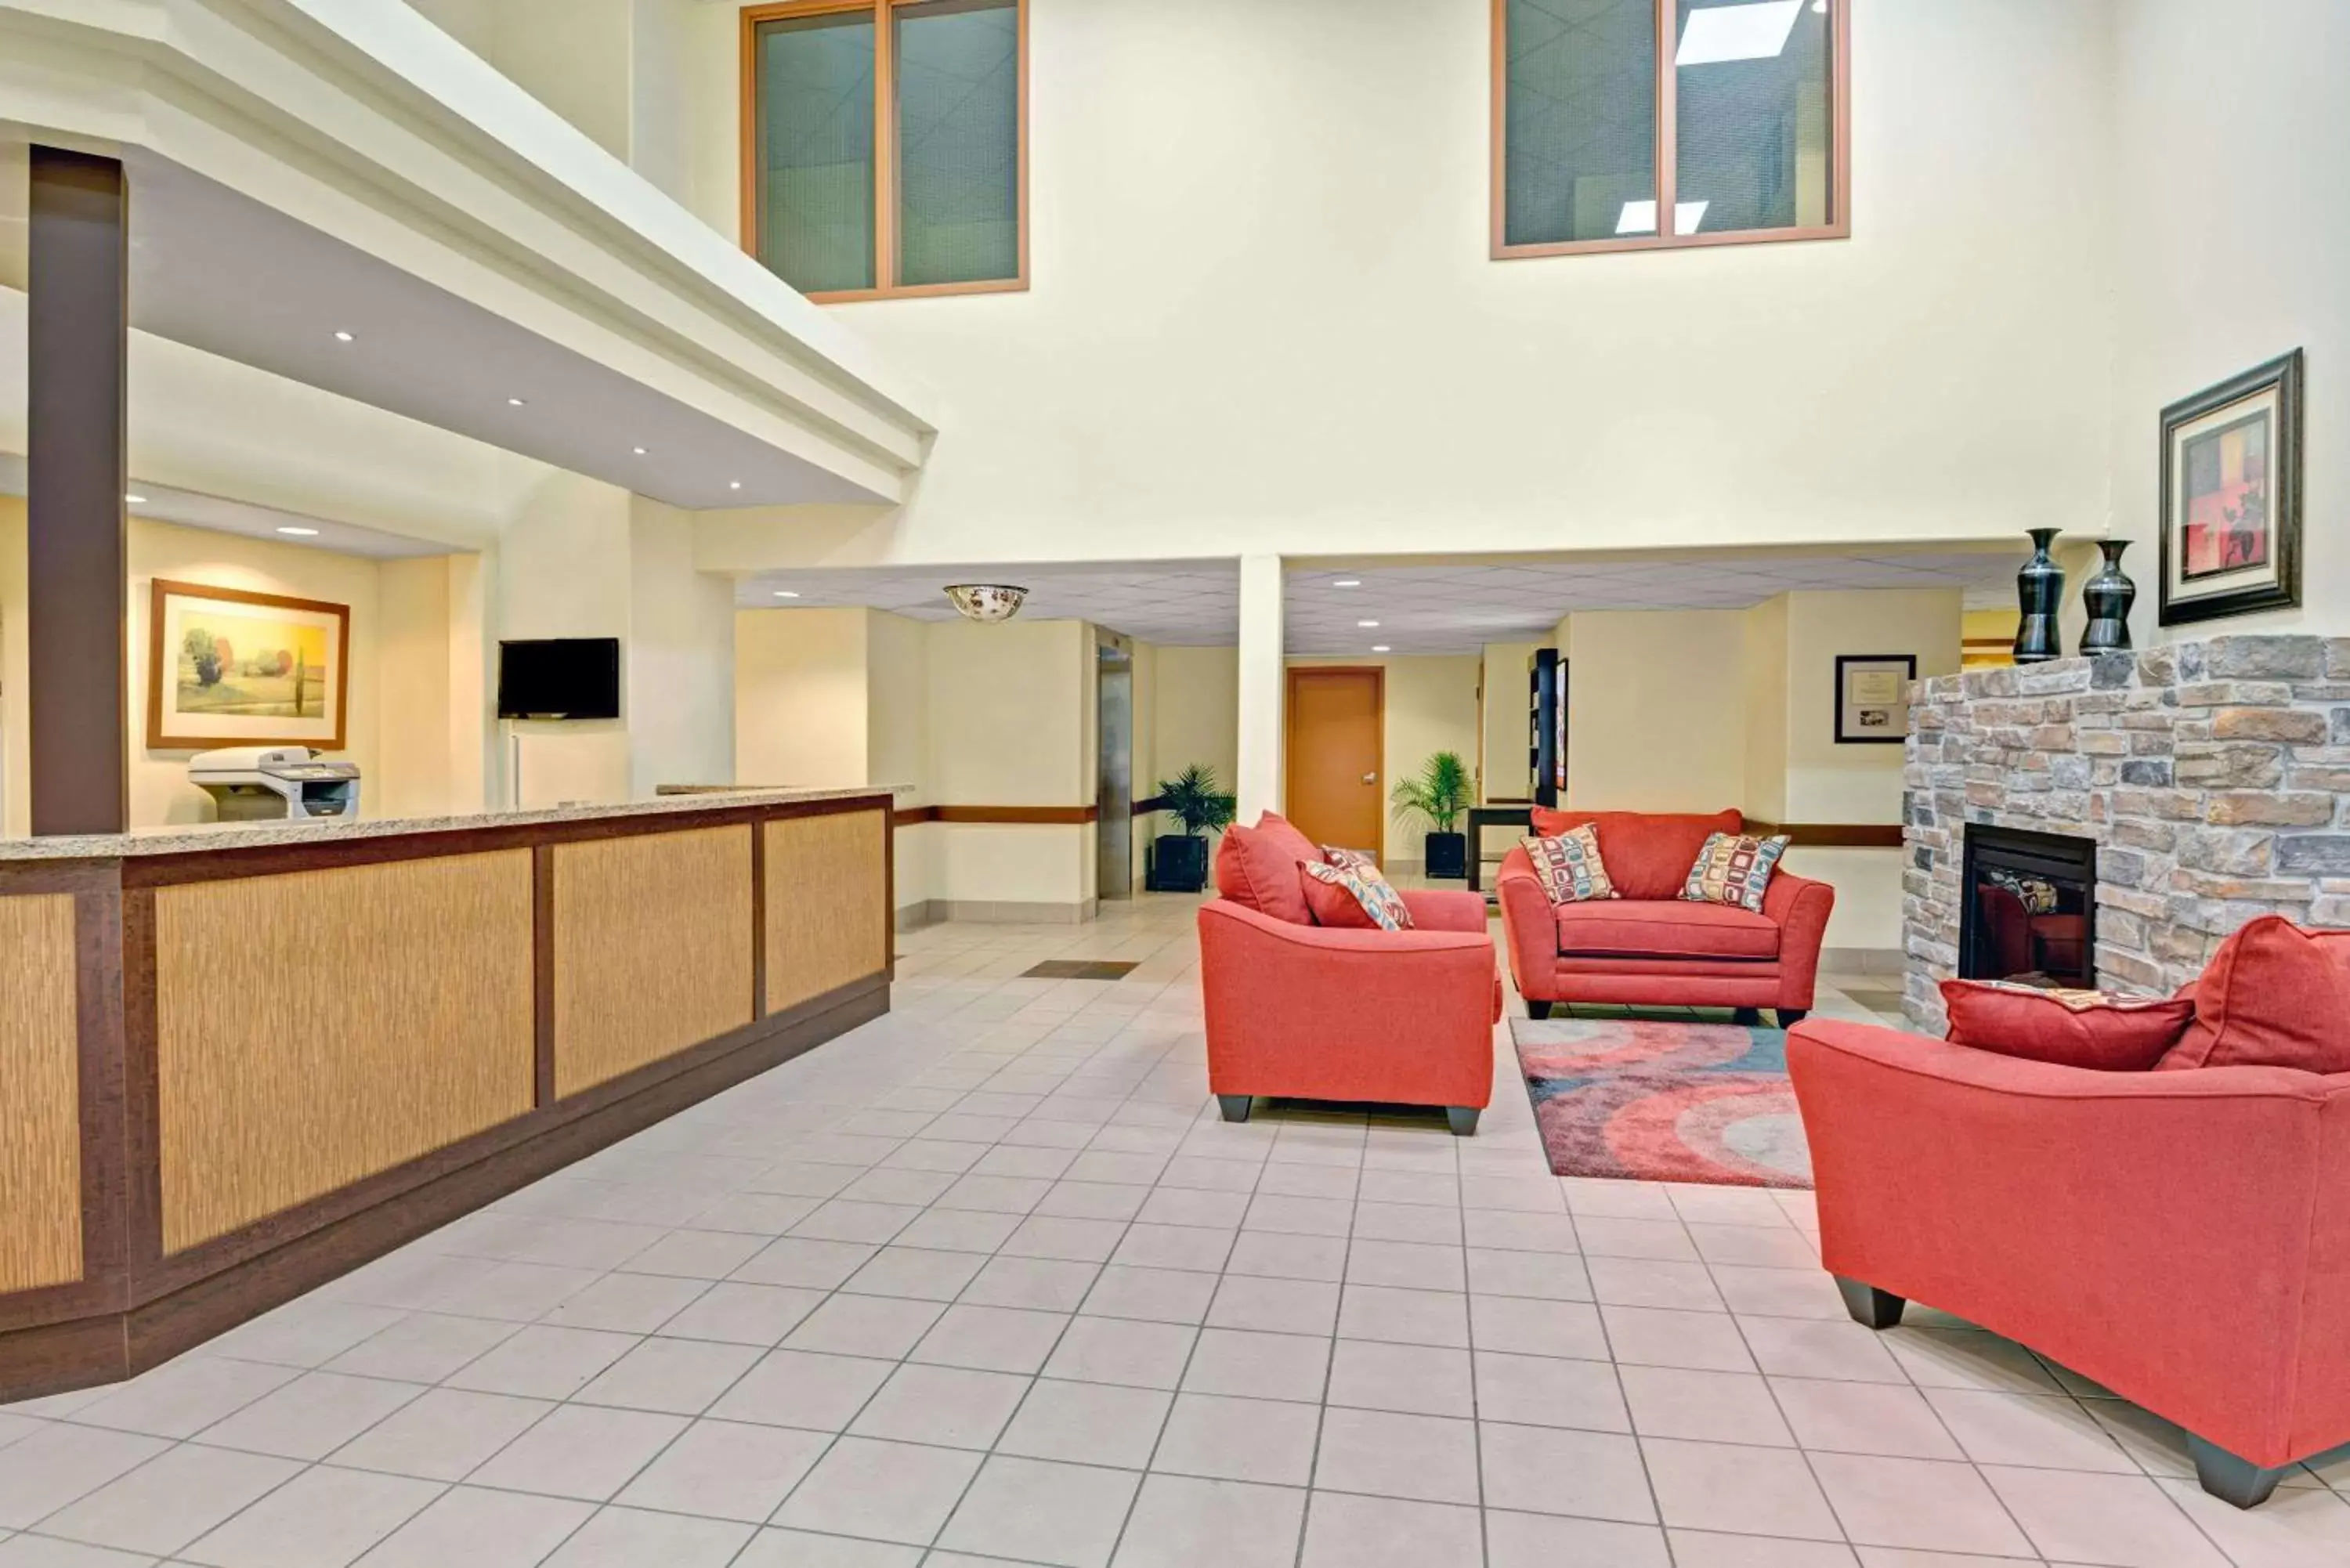 Lobby or reception, Lobby/Reception in Super 8 by Wyndham Barrie